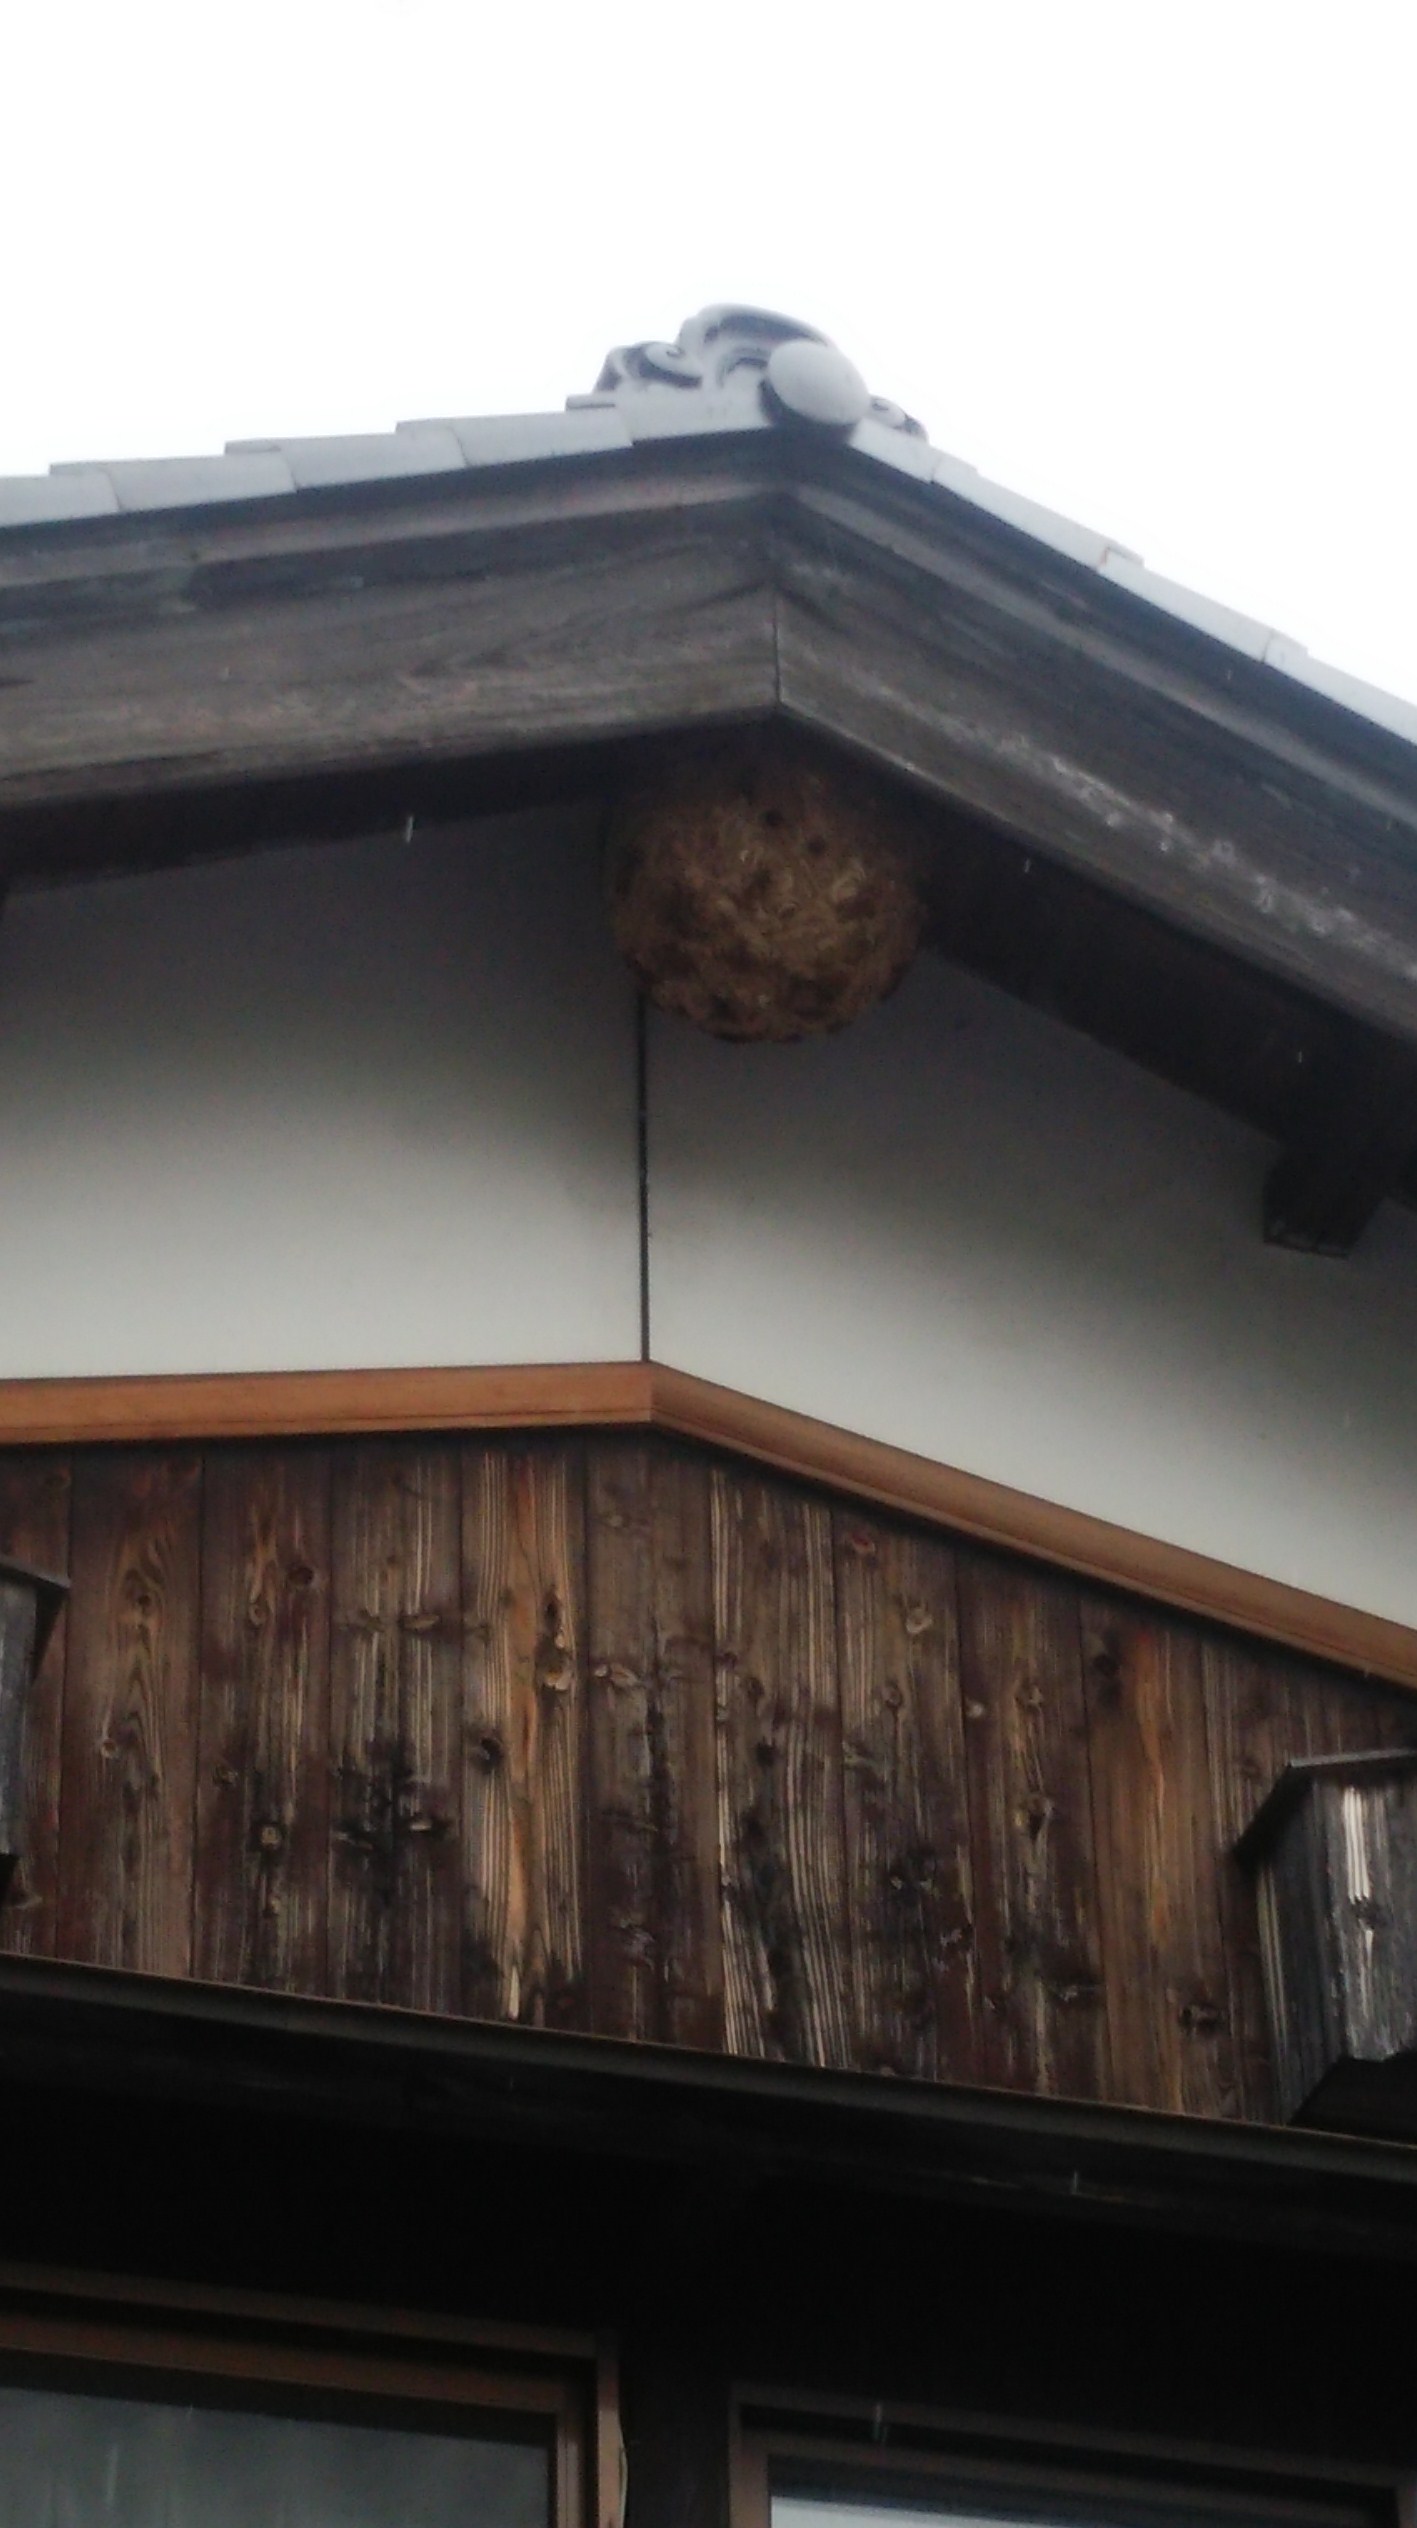 滋賀県高島市で切妻屋根の破風裏に営巣したキイロスズメバチの蜂の巣駆除